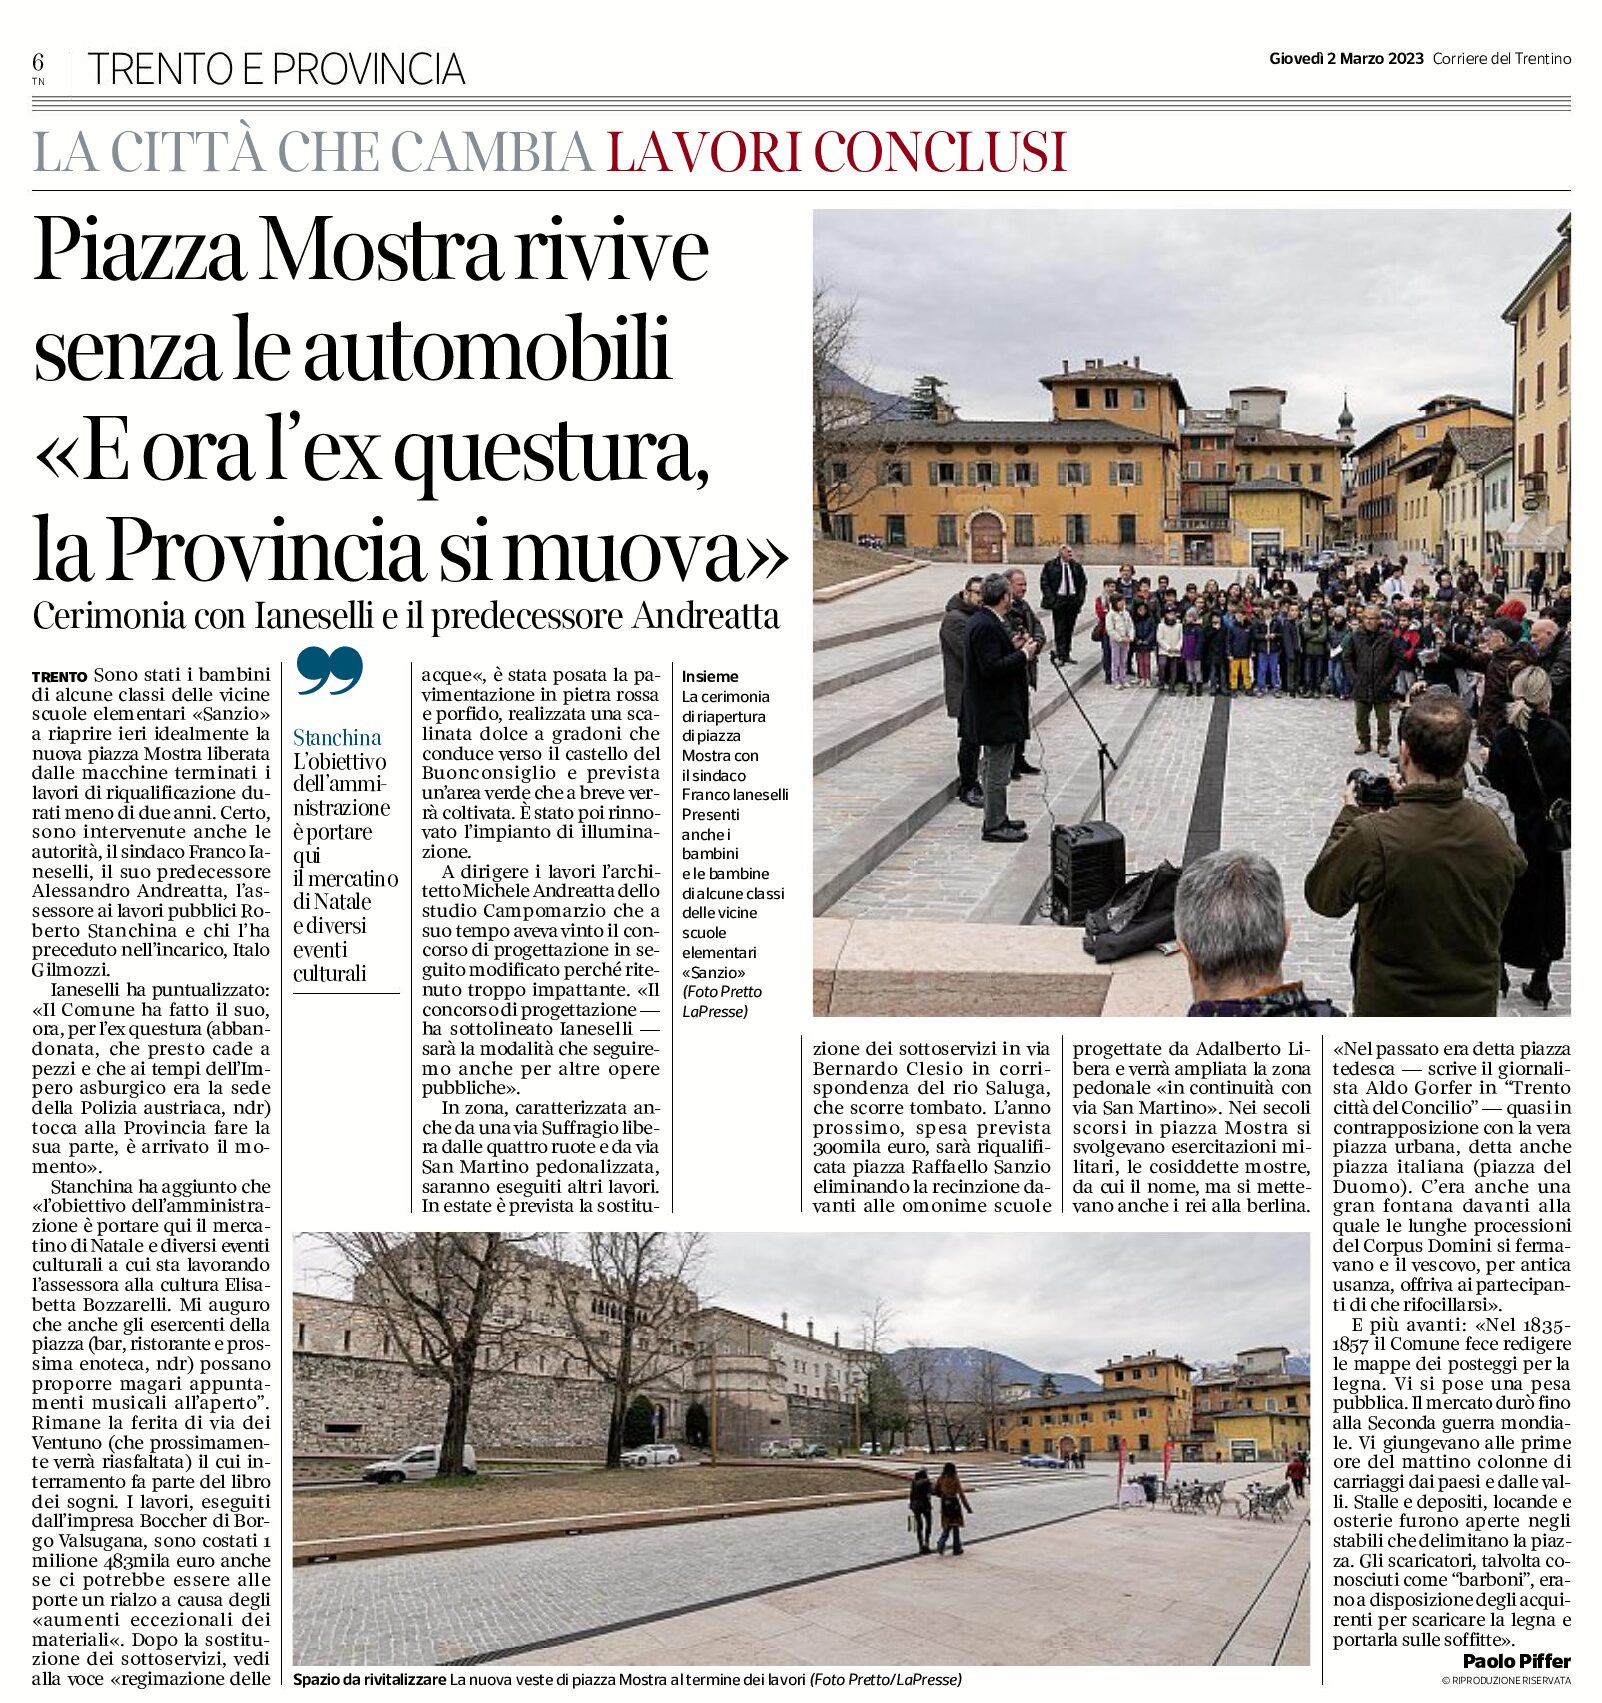 Trento: piazza Mostra rivive senza le auto